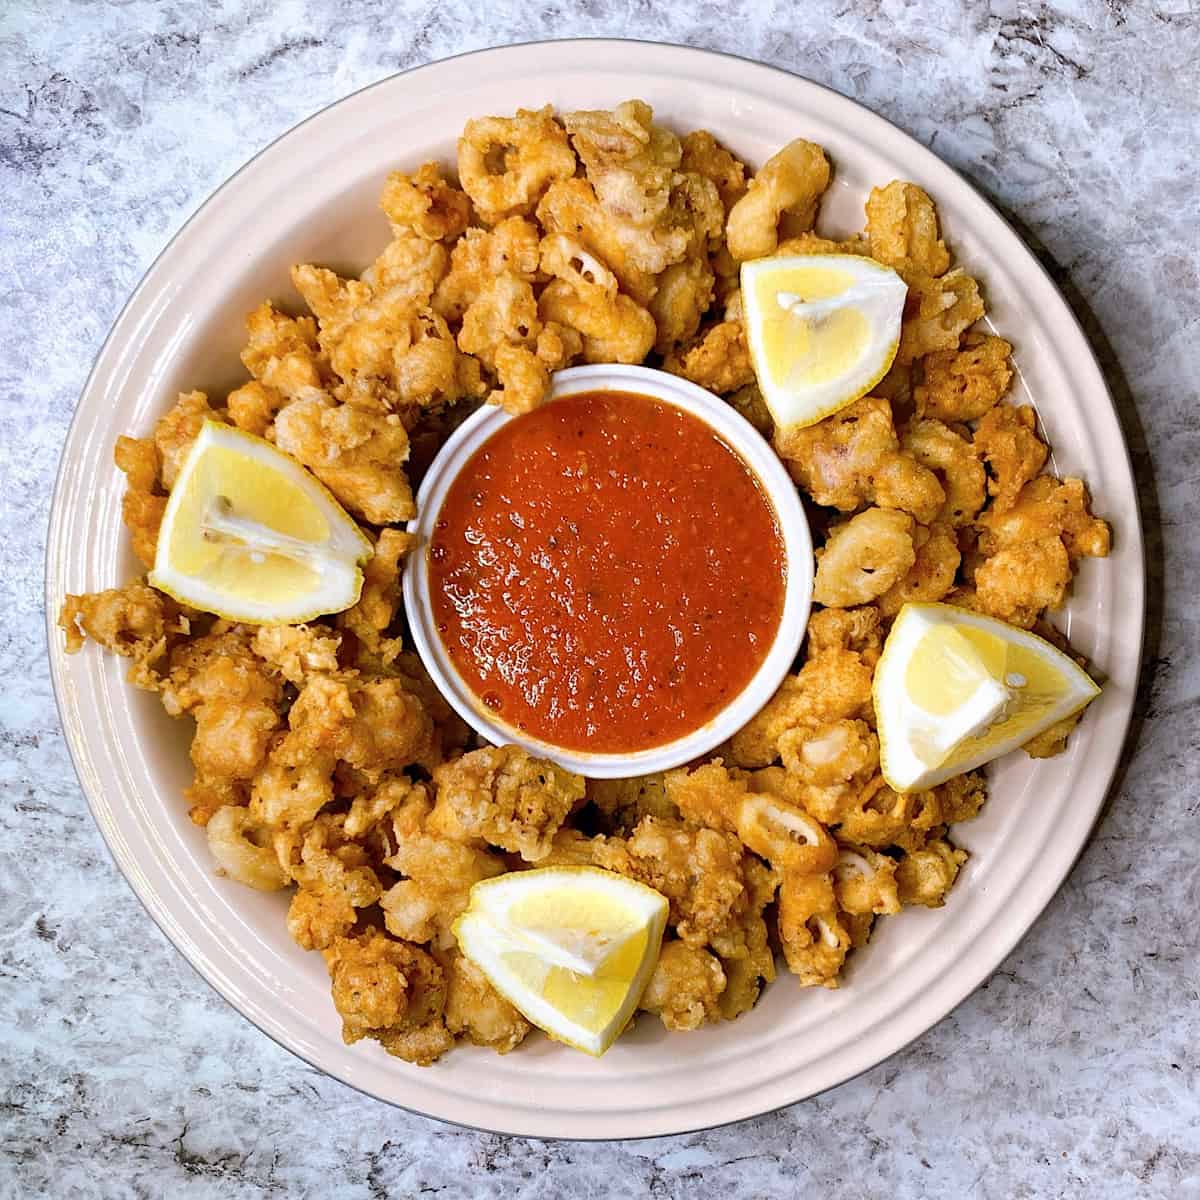 Deep fried calamari in a dish with lemon and marinara sauce